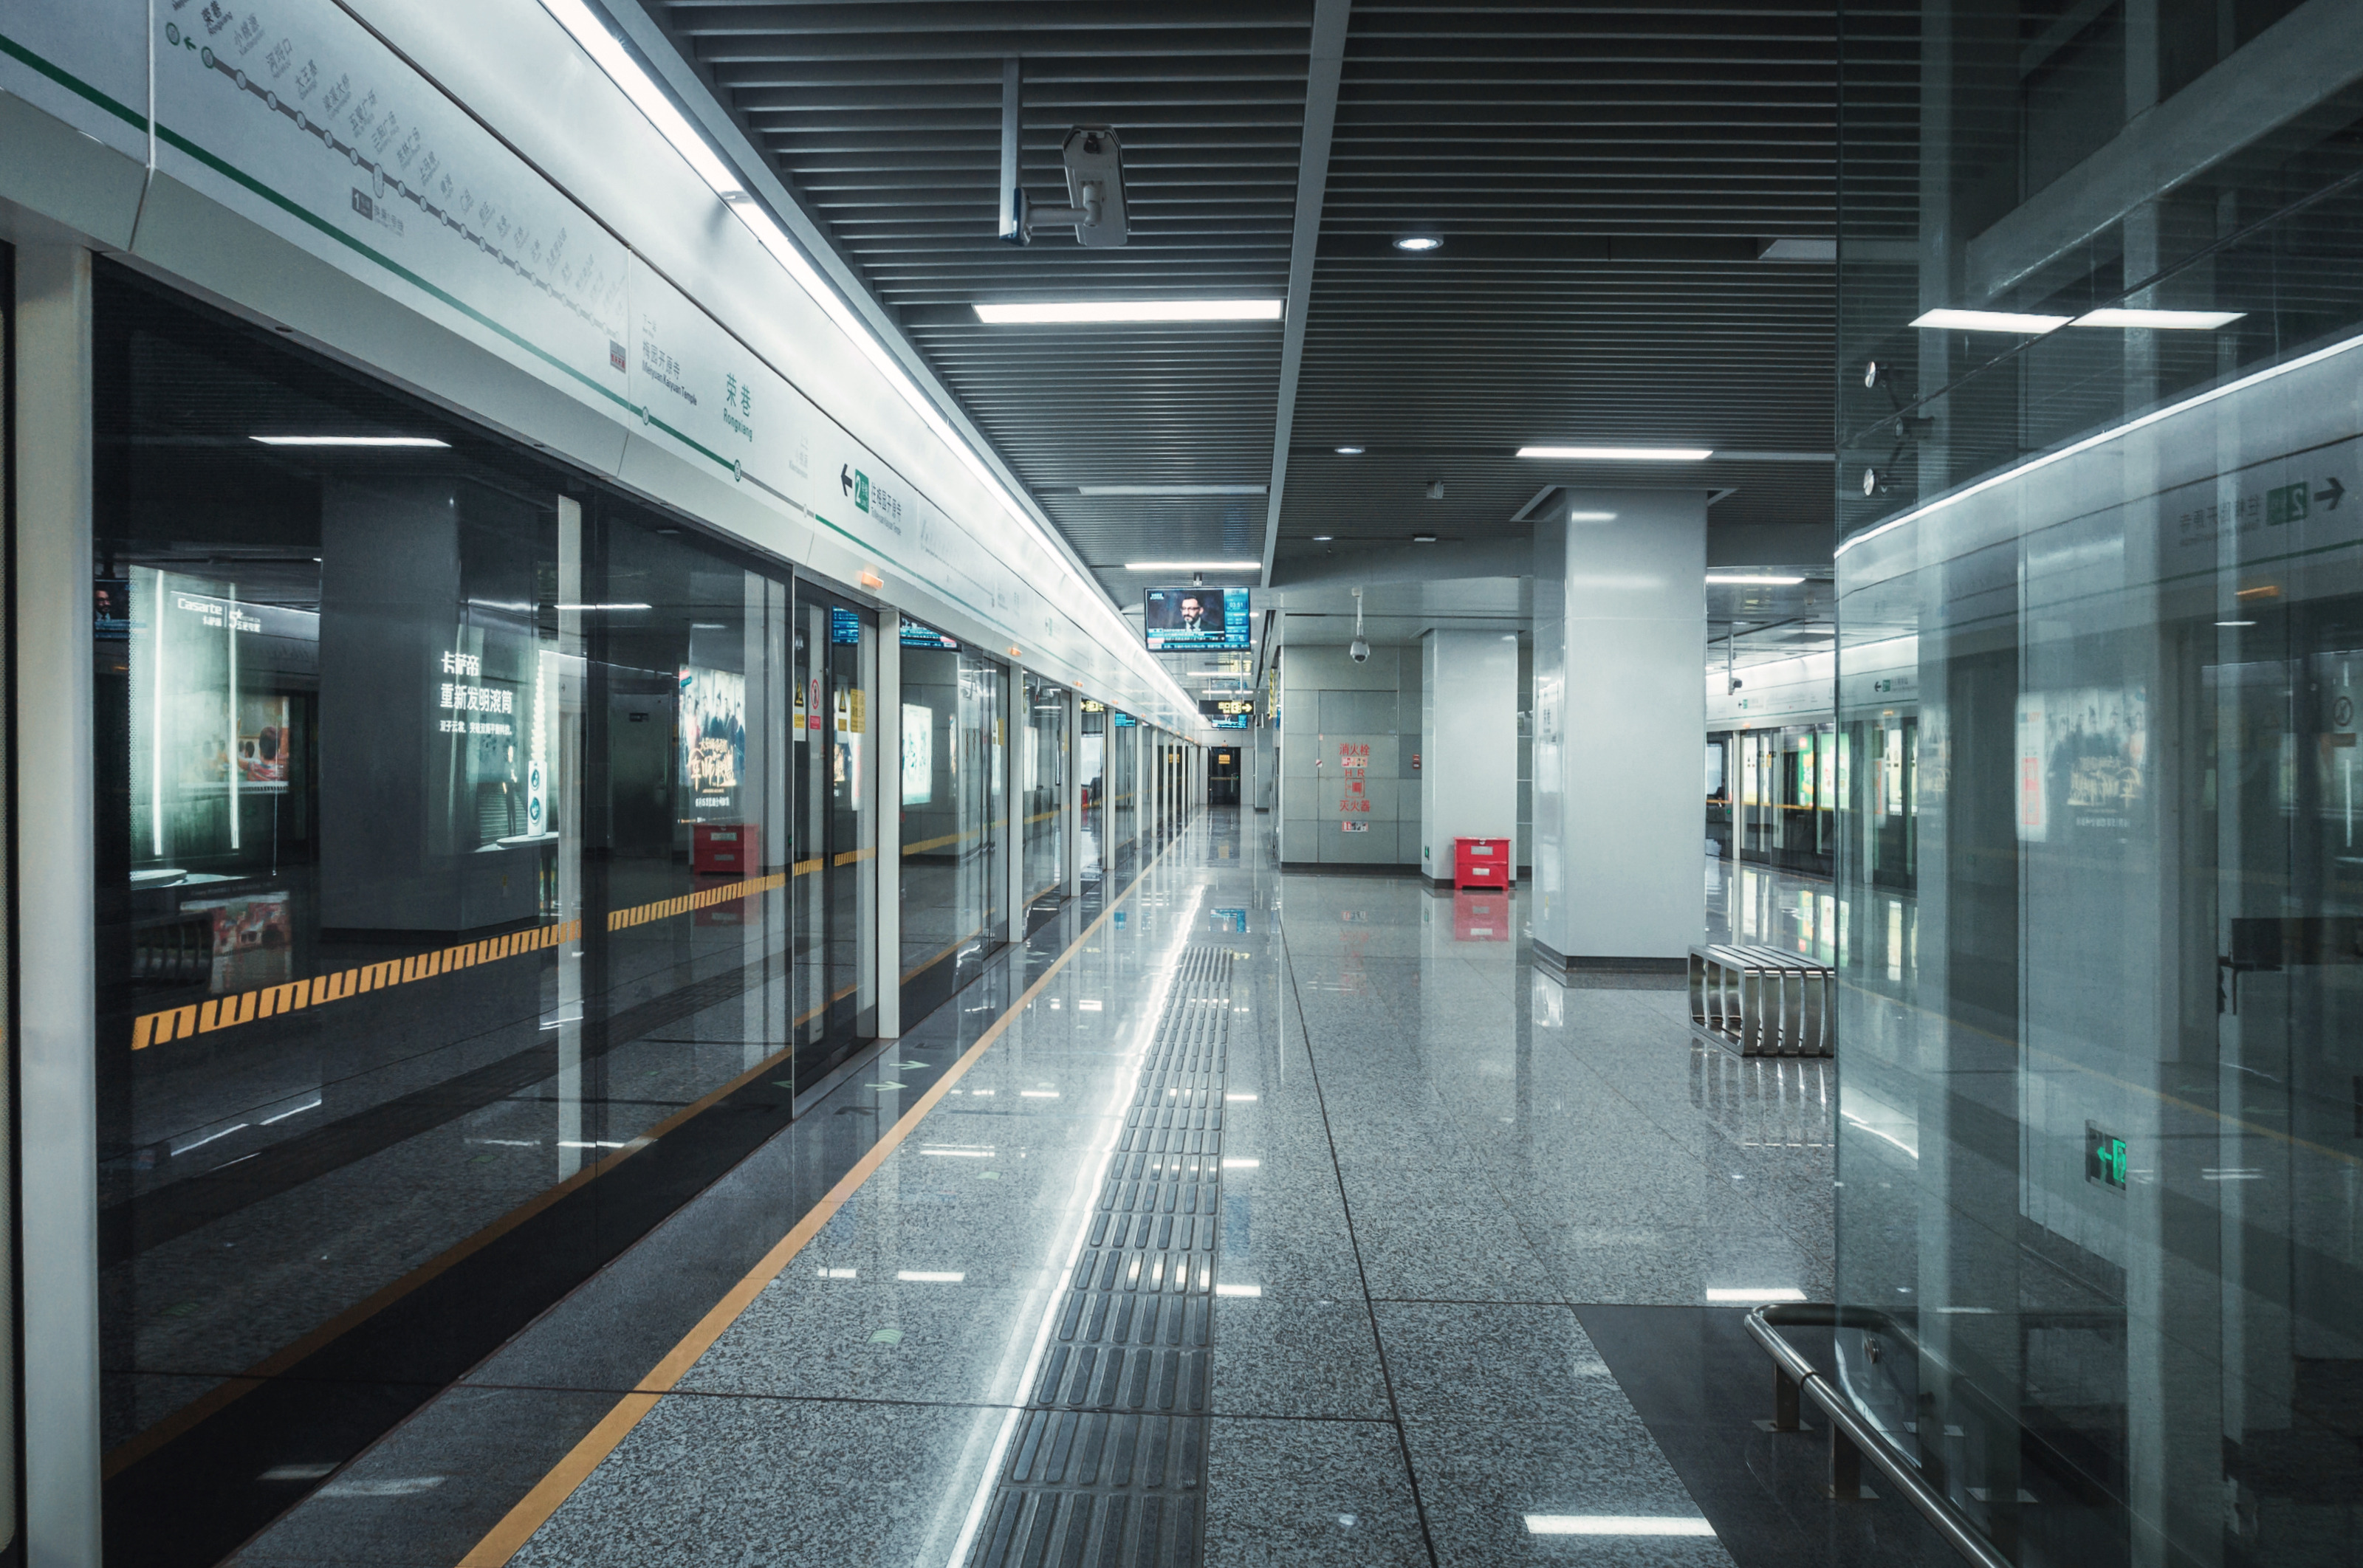 6座车站12万吨构件装配完成 青岛地铁6号线成就一项“全国之最”-青岛西海岸新闻网